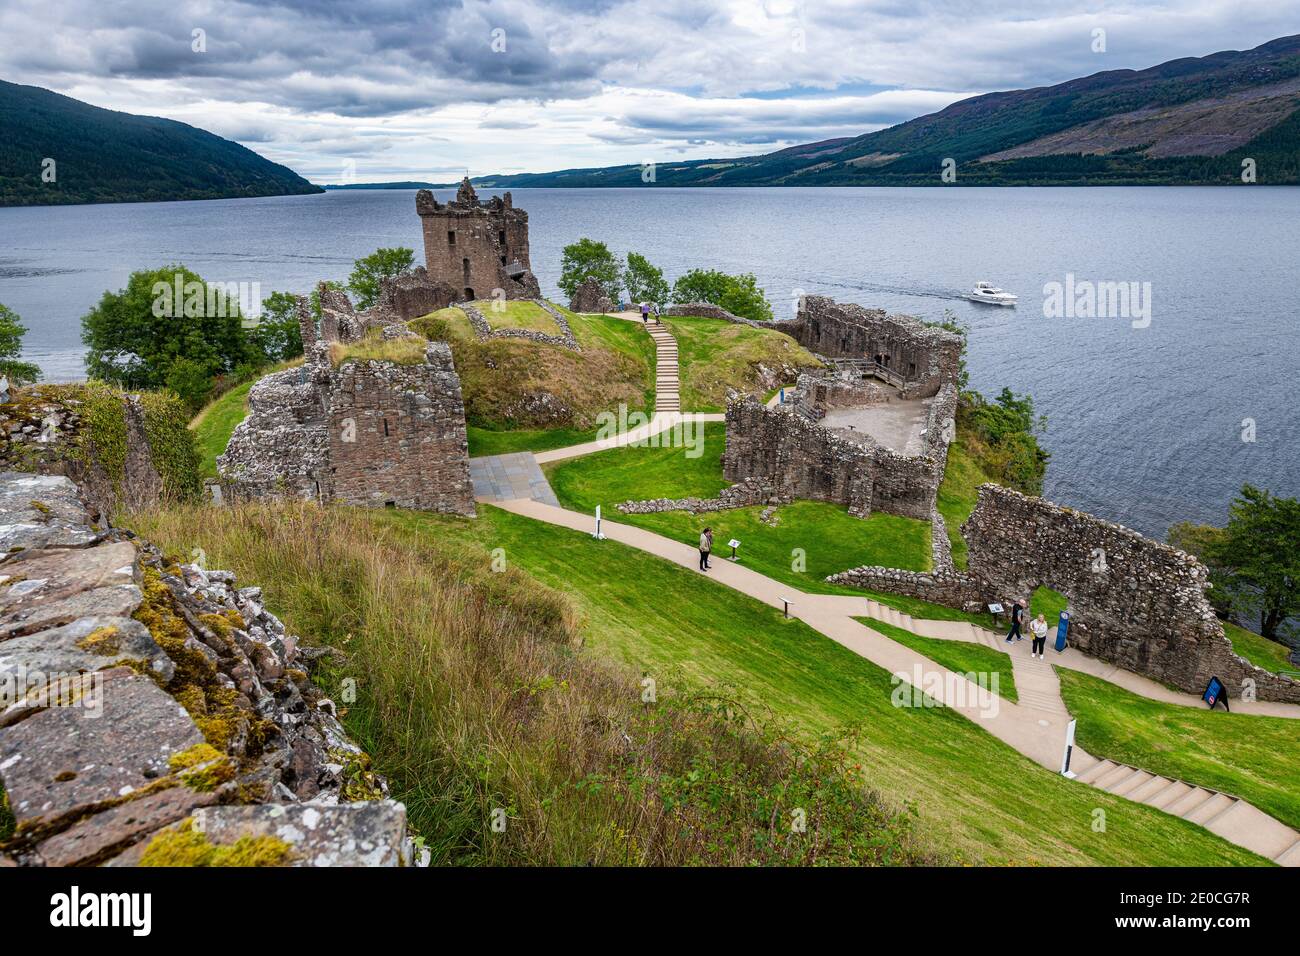 Le Château d'Urquhart, Loch Ness, Highlands, Écosse, Royaume-Uni, Europe Banque D'Images